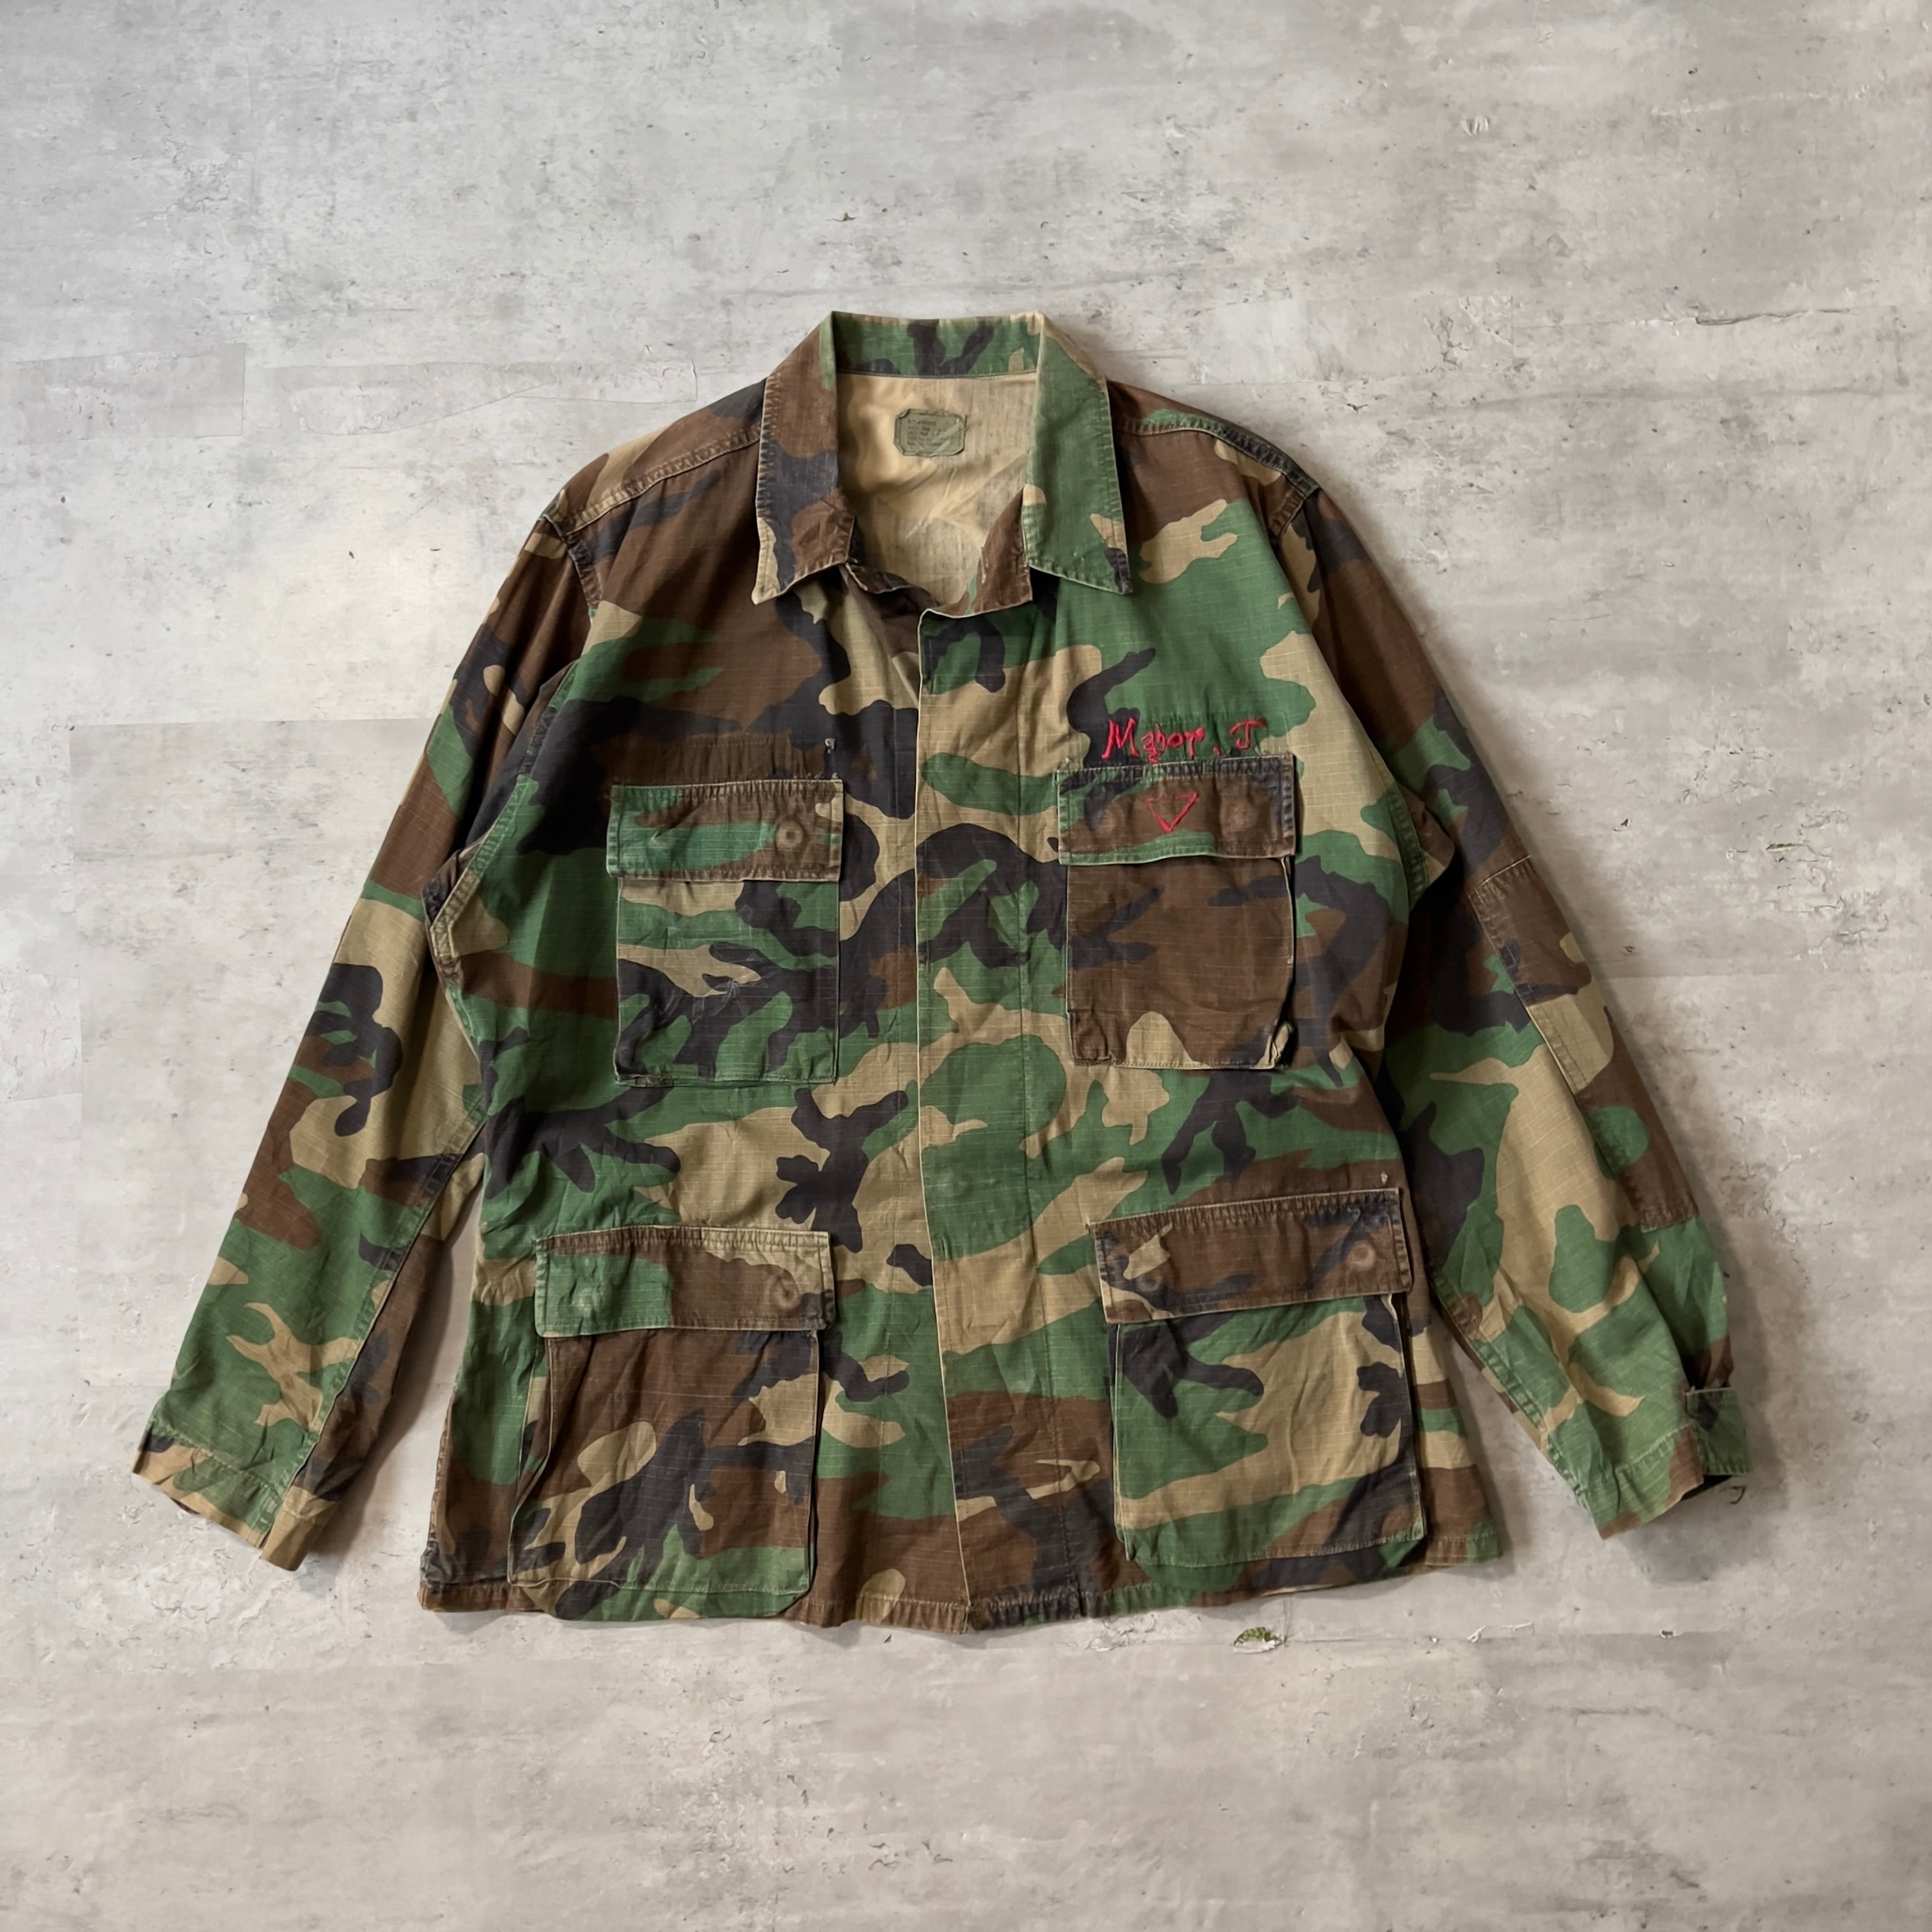 91年会計 US ARMY custom made BDU woodland camo jacket M-R 90年代 米軍実品 ウッドランドカモ  迷彩 ミリタリーシャツ USA製 MIDIUM-REGULAR ヴィンテージ anti knovum（アンタイノーム）